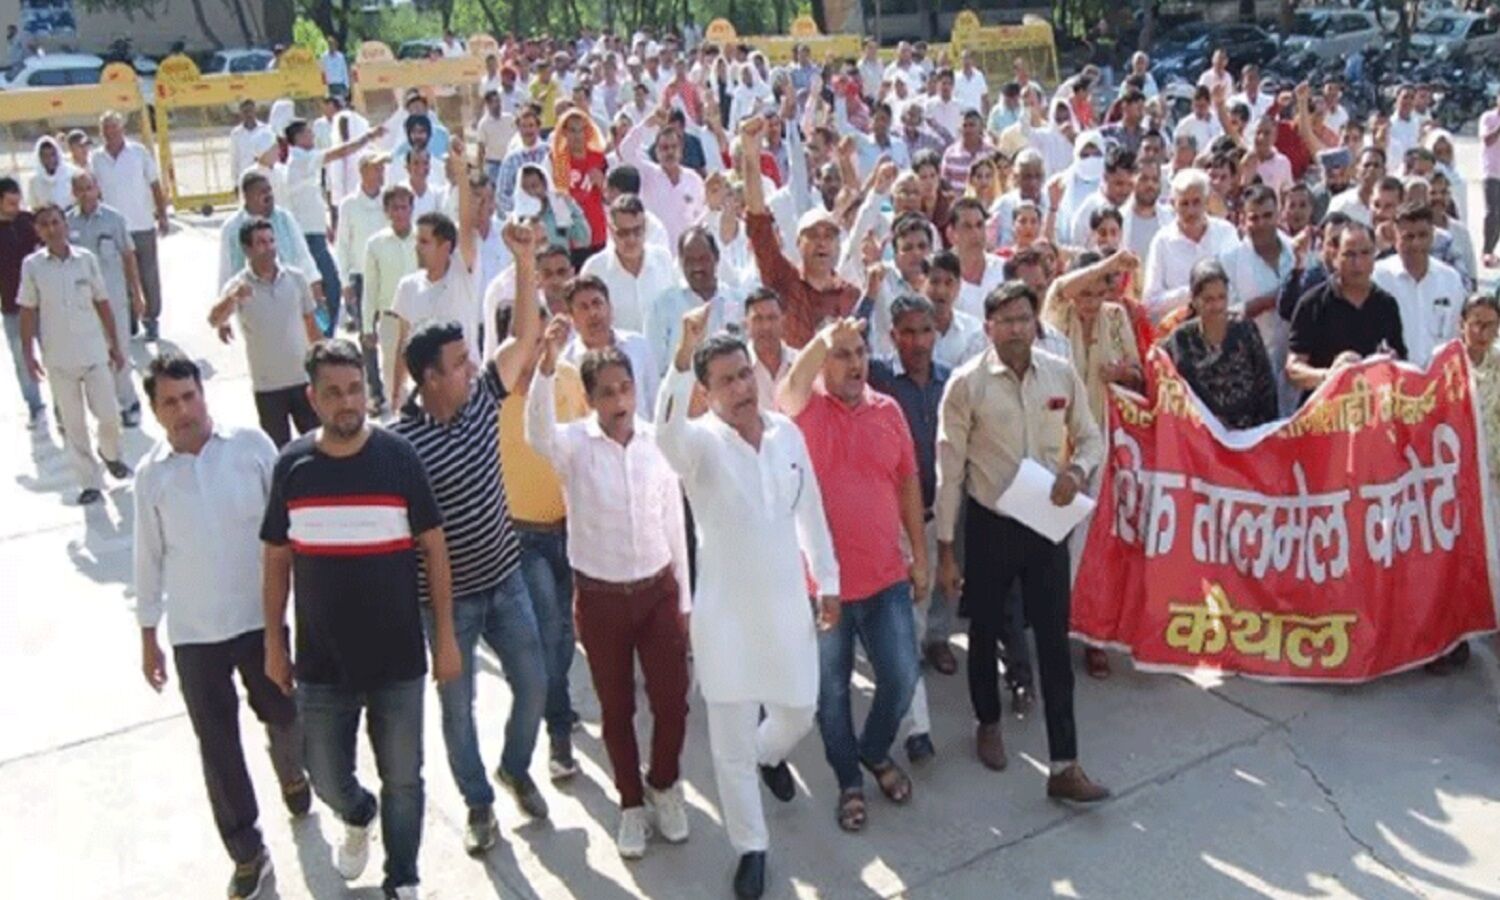 Haryana News : जानिए क्या है चिराग योजना, जिसका विरोध करने पर हरियाणा के कैथल में अध्यापक पर दर्ज हुआ राजद्रोह का मुकदमा